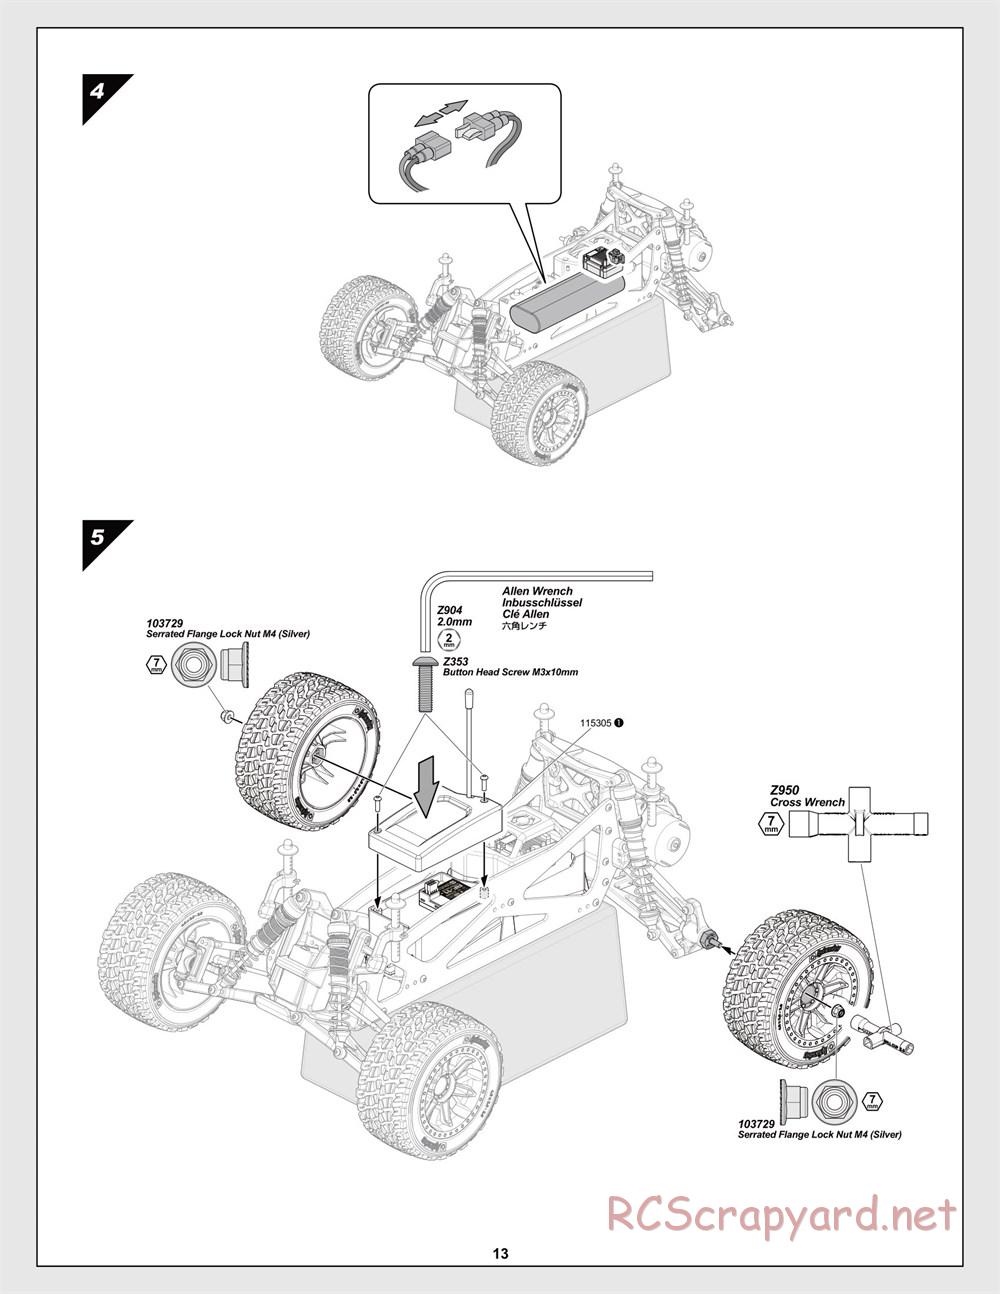 HPI - Jumpshot MT V2 - Manual - Page 13